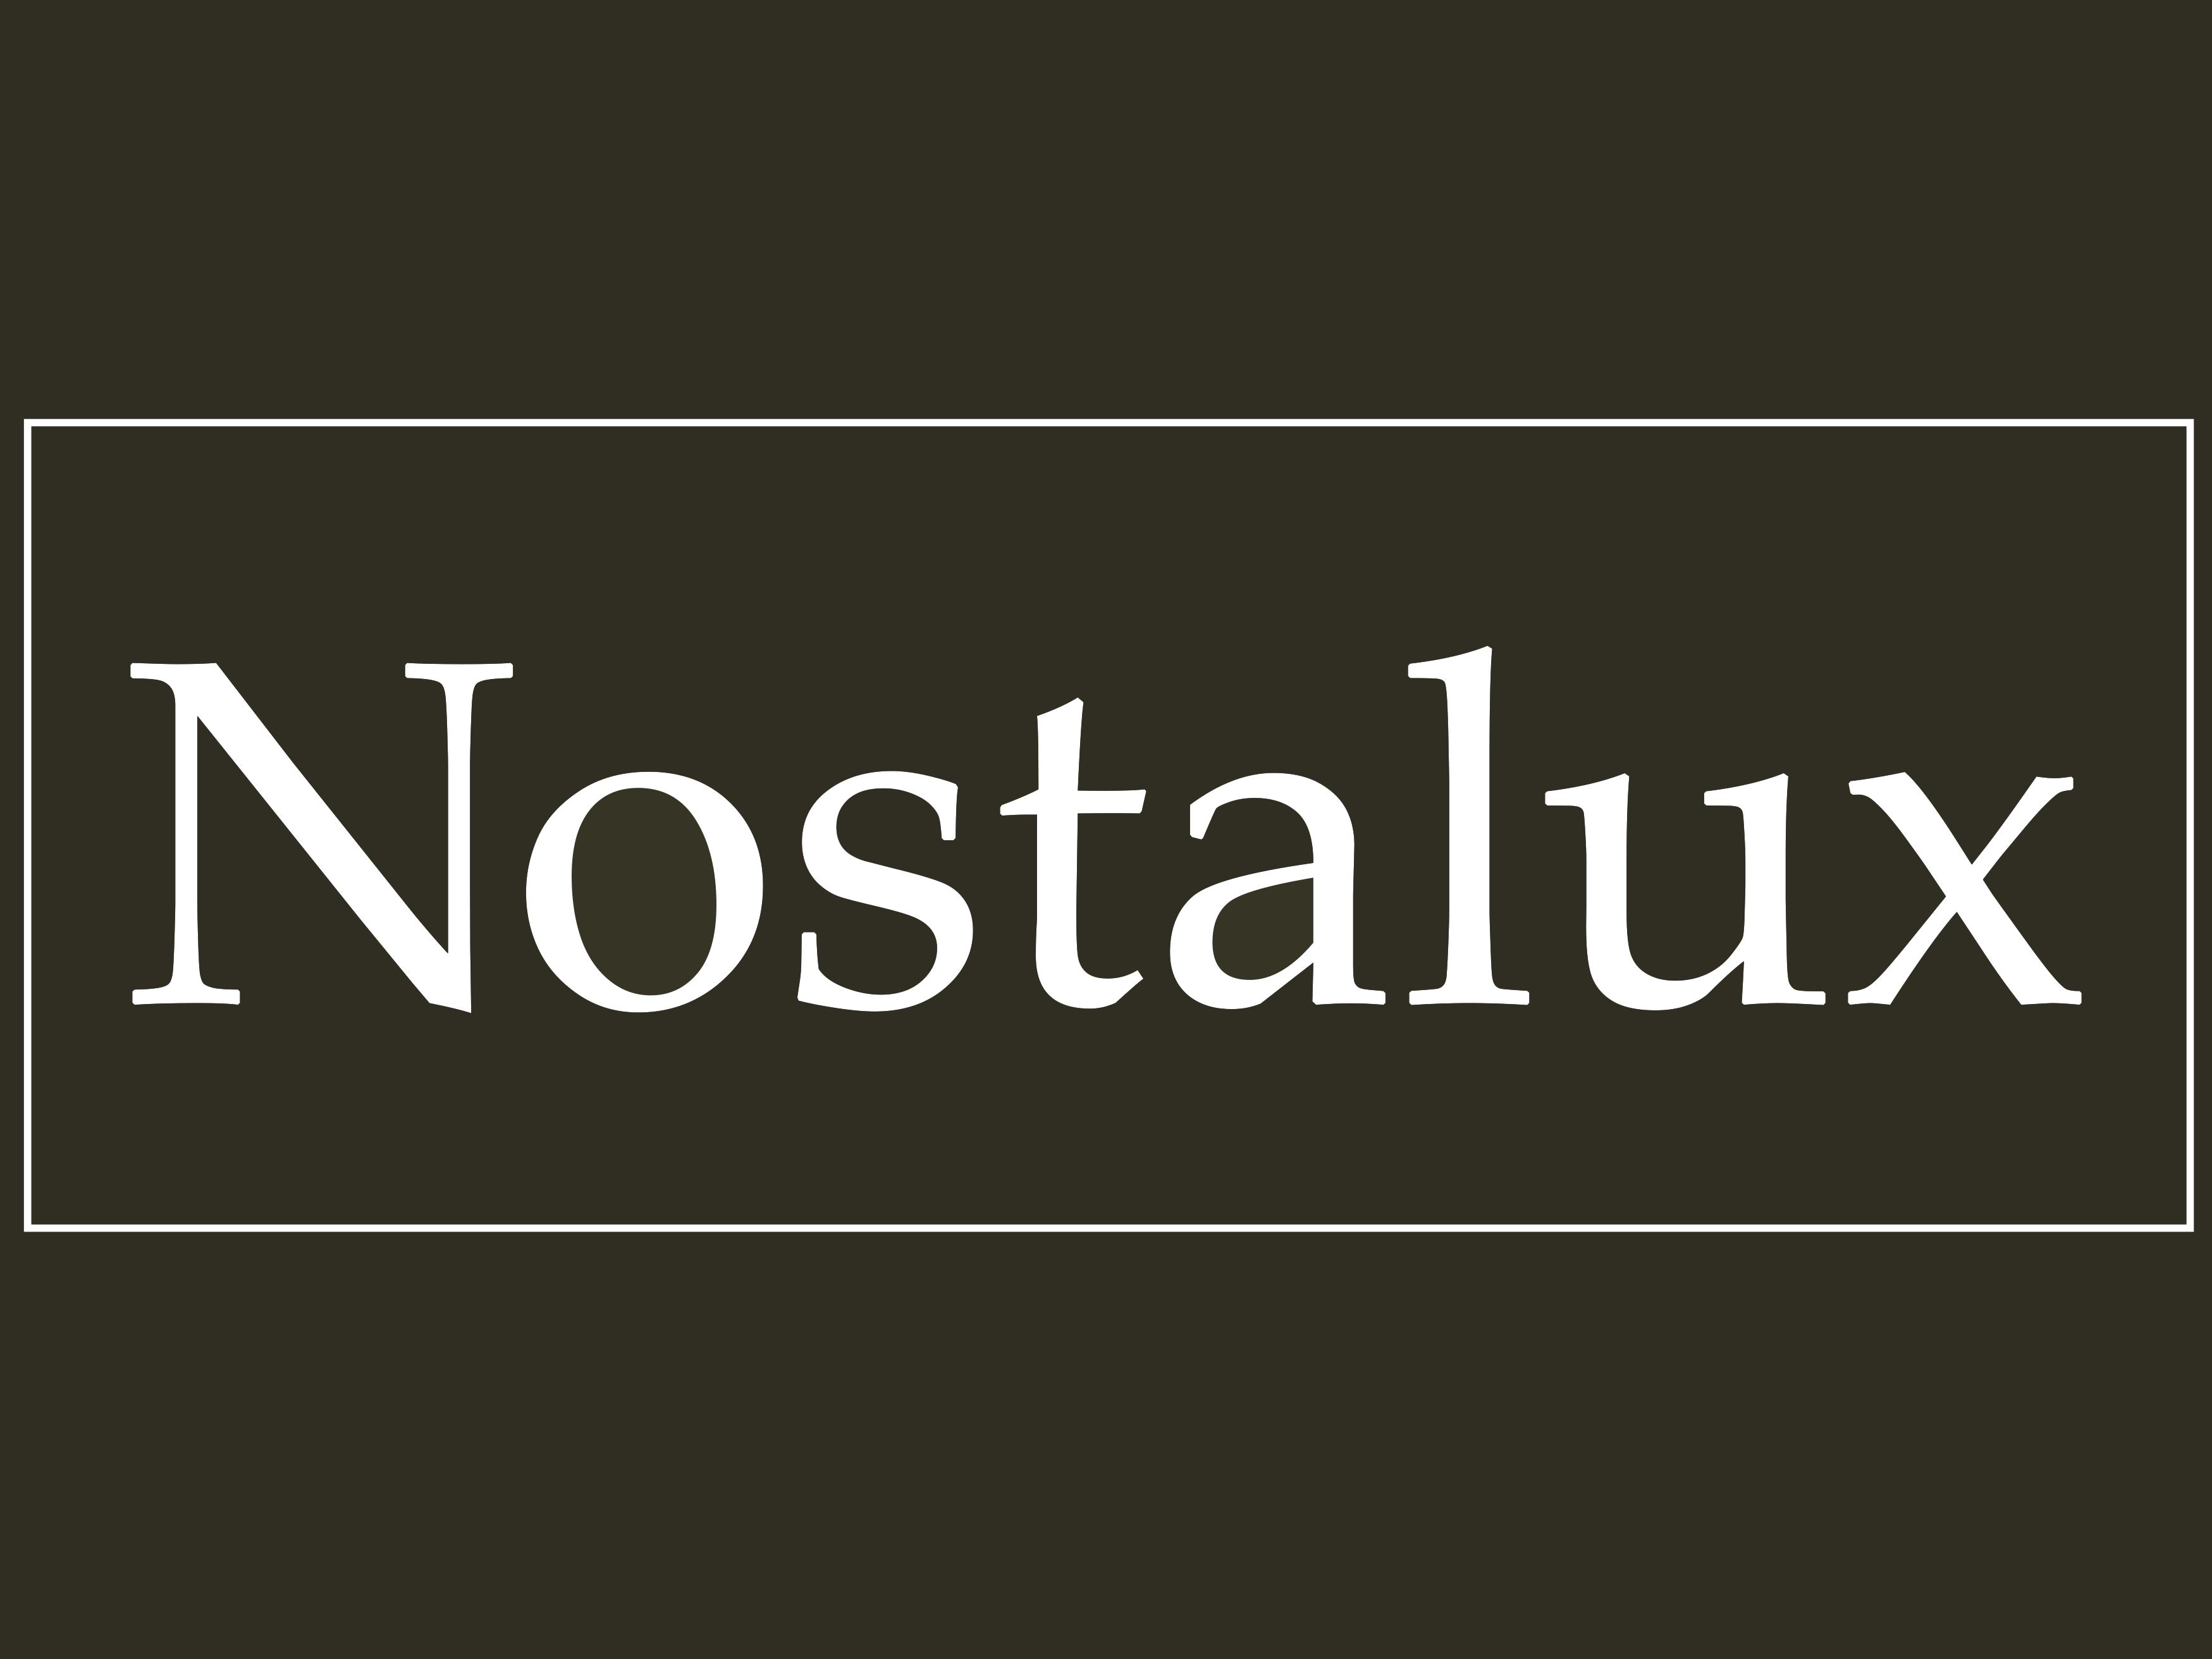 Nostalux